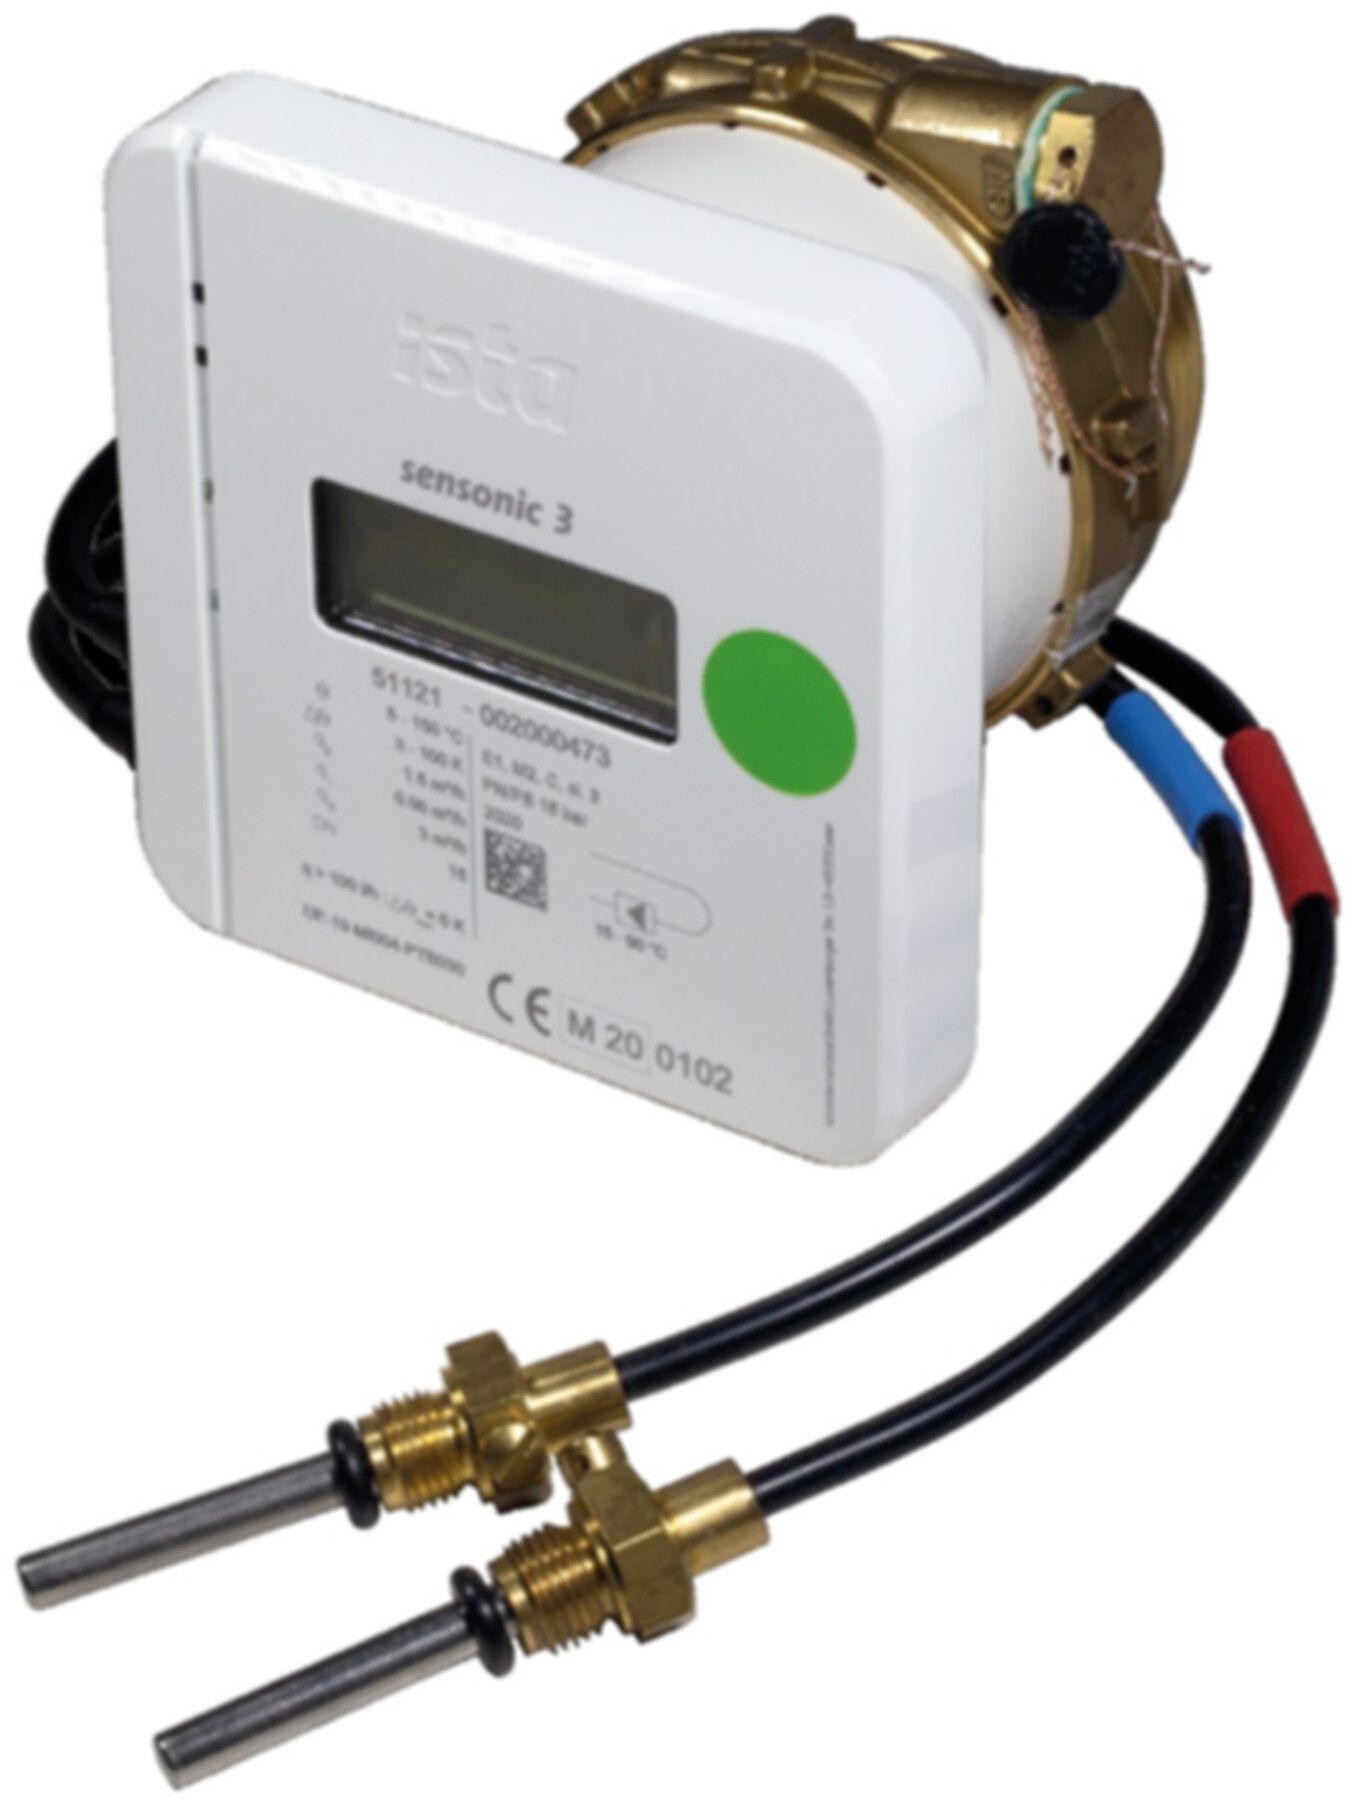 Wärmezähler Sensonic III EAS 16 bar 15-90°C 2.5 m3/h - ISTA - Wärme- / Wasserzähler